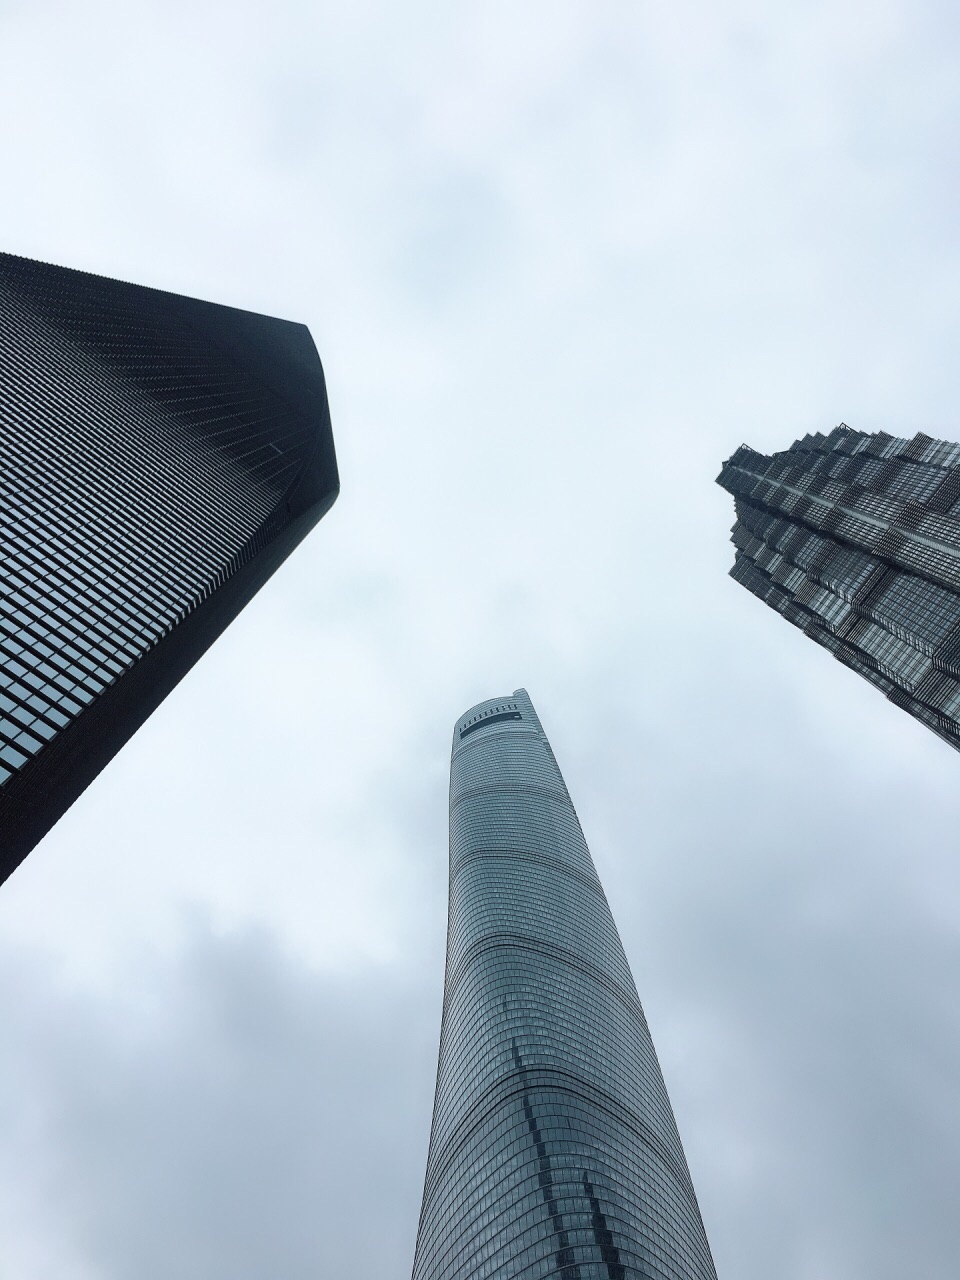 上海中心大厦上海中心大厦Shanghai Tower